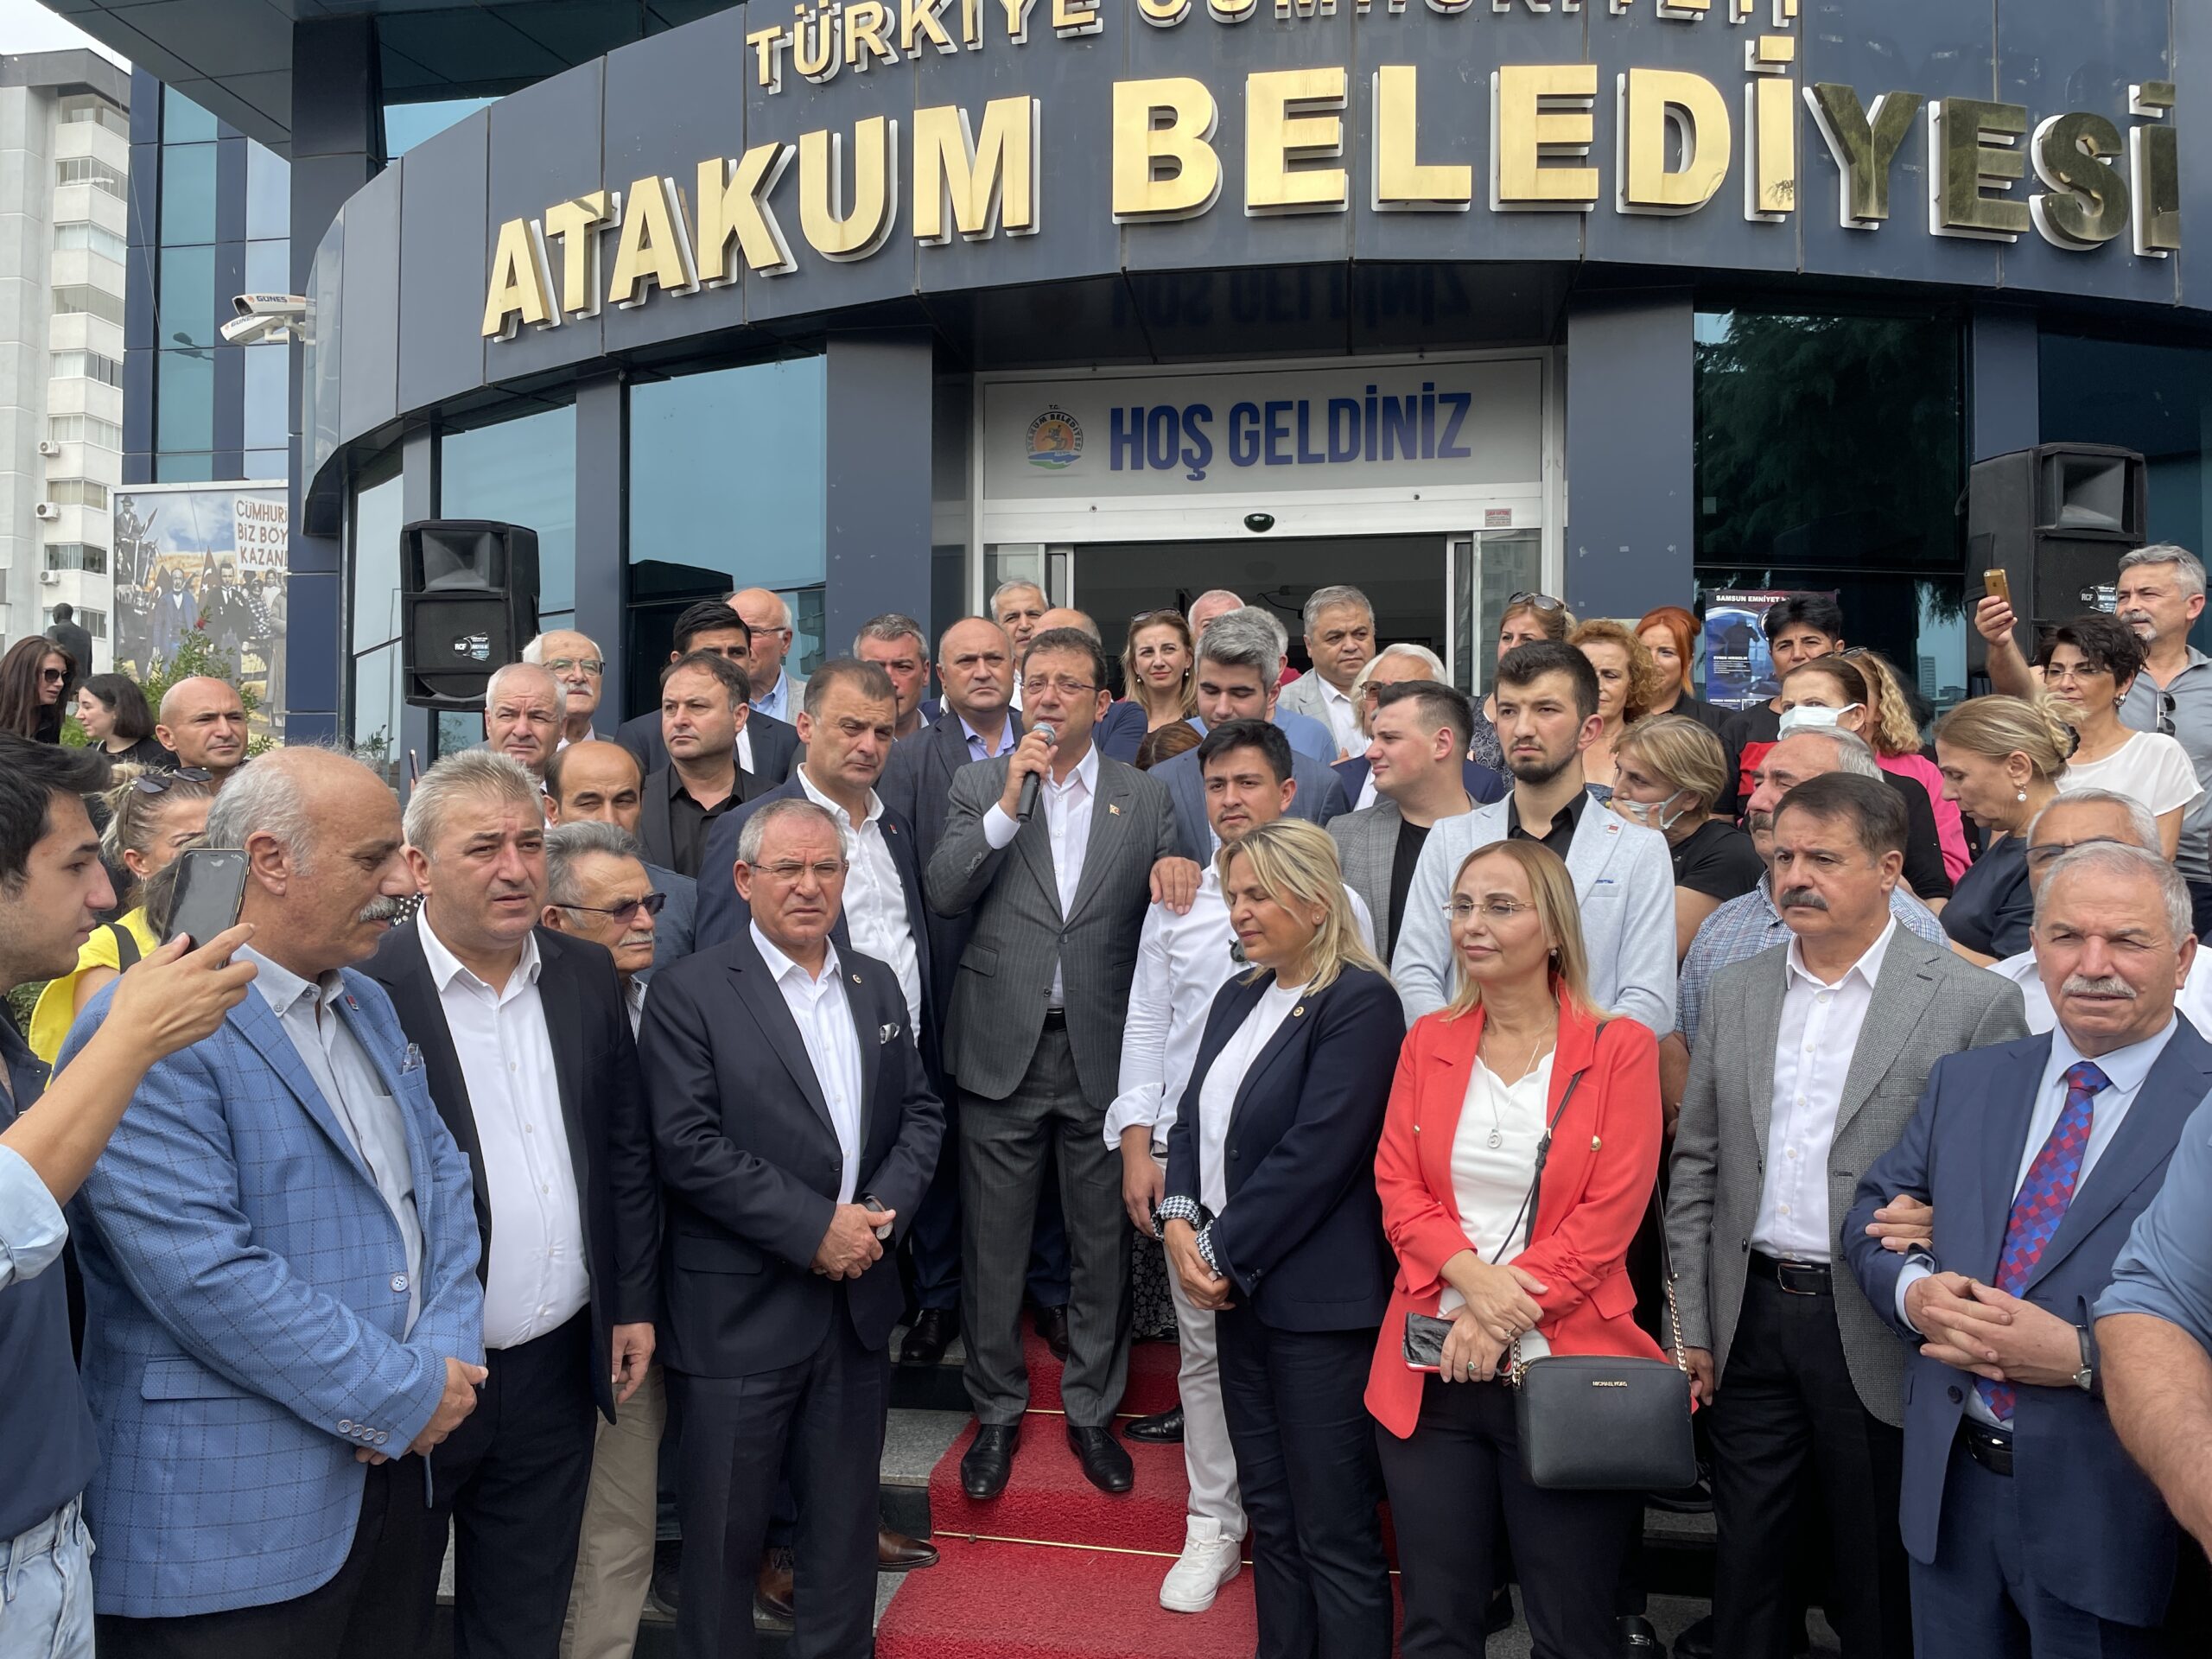 İstanbul Büyükşehir Belediye Başkanı İmamoğlu, Atakum Belediyesini ziyaret etti